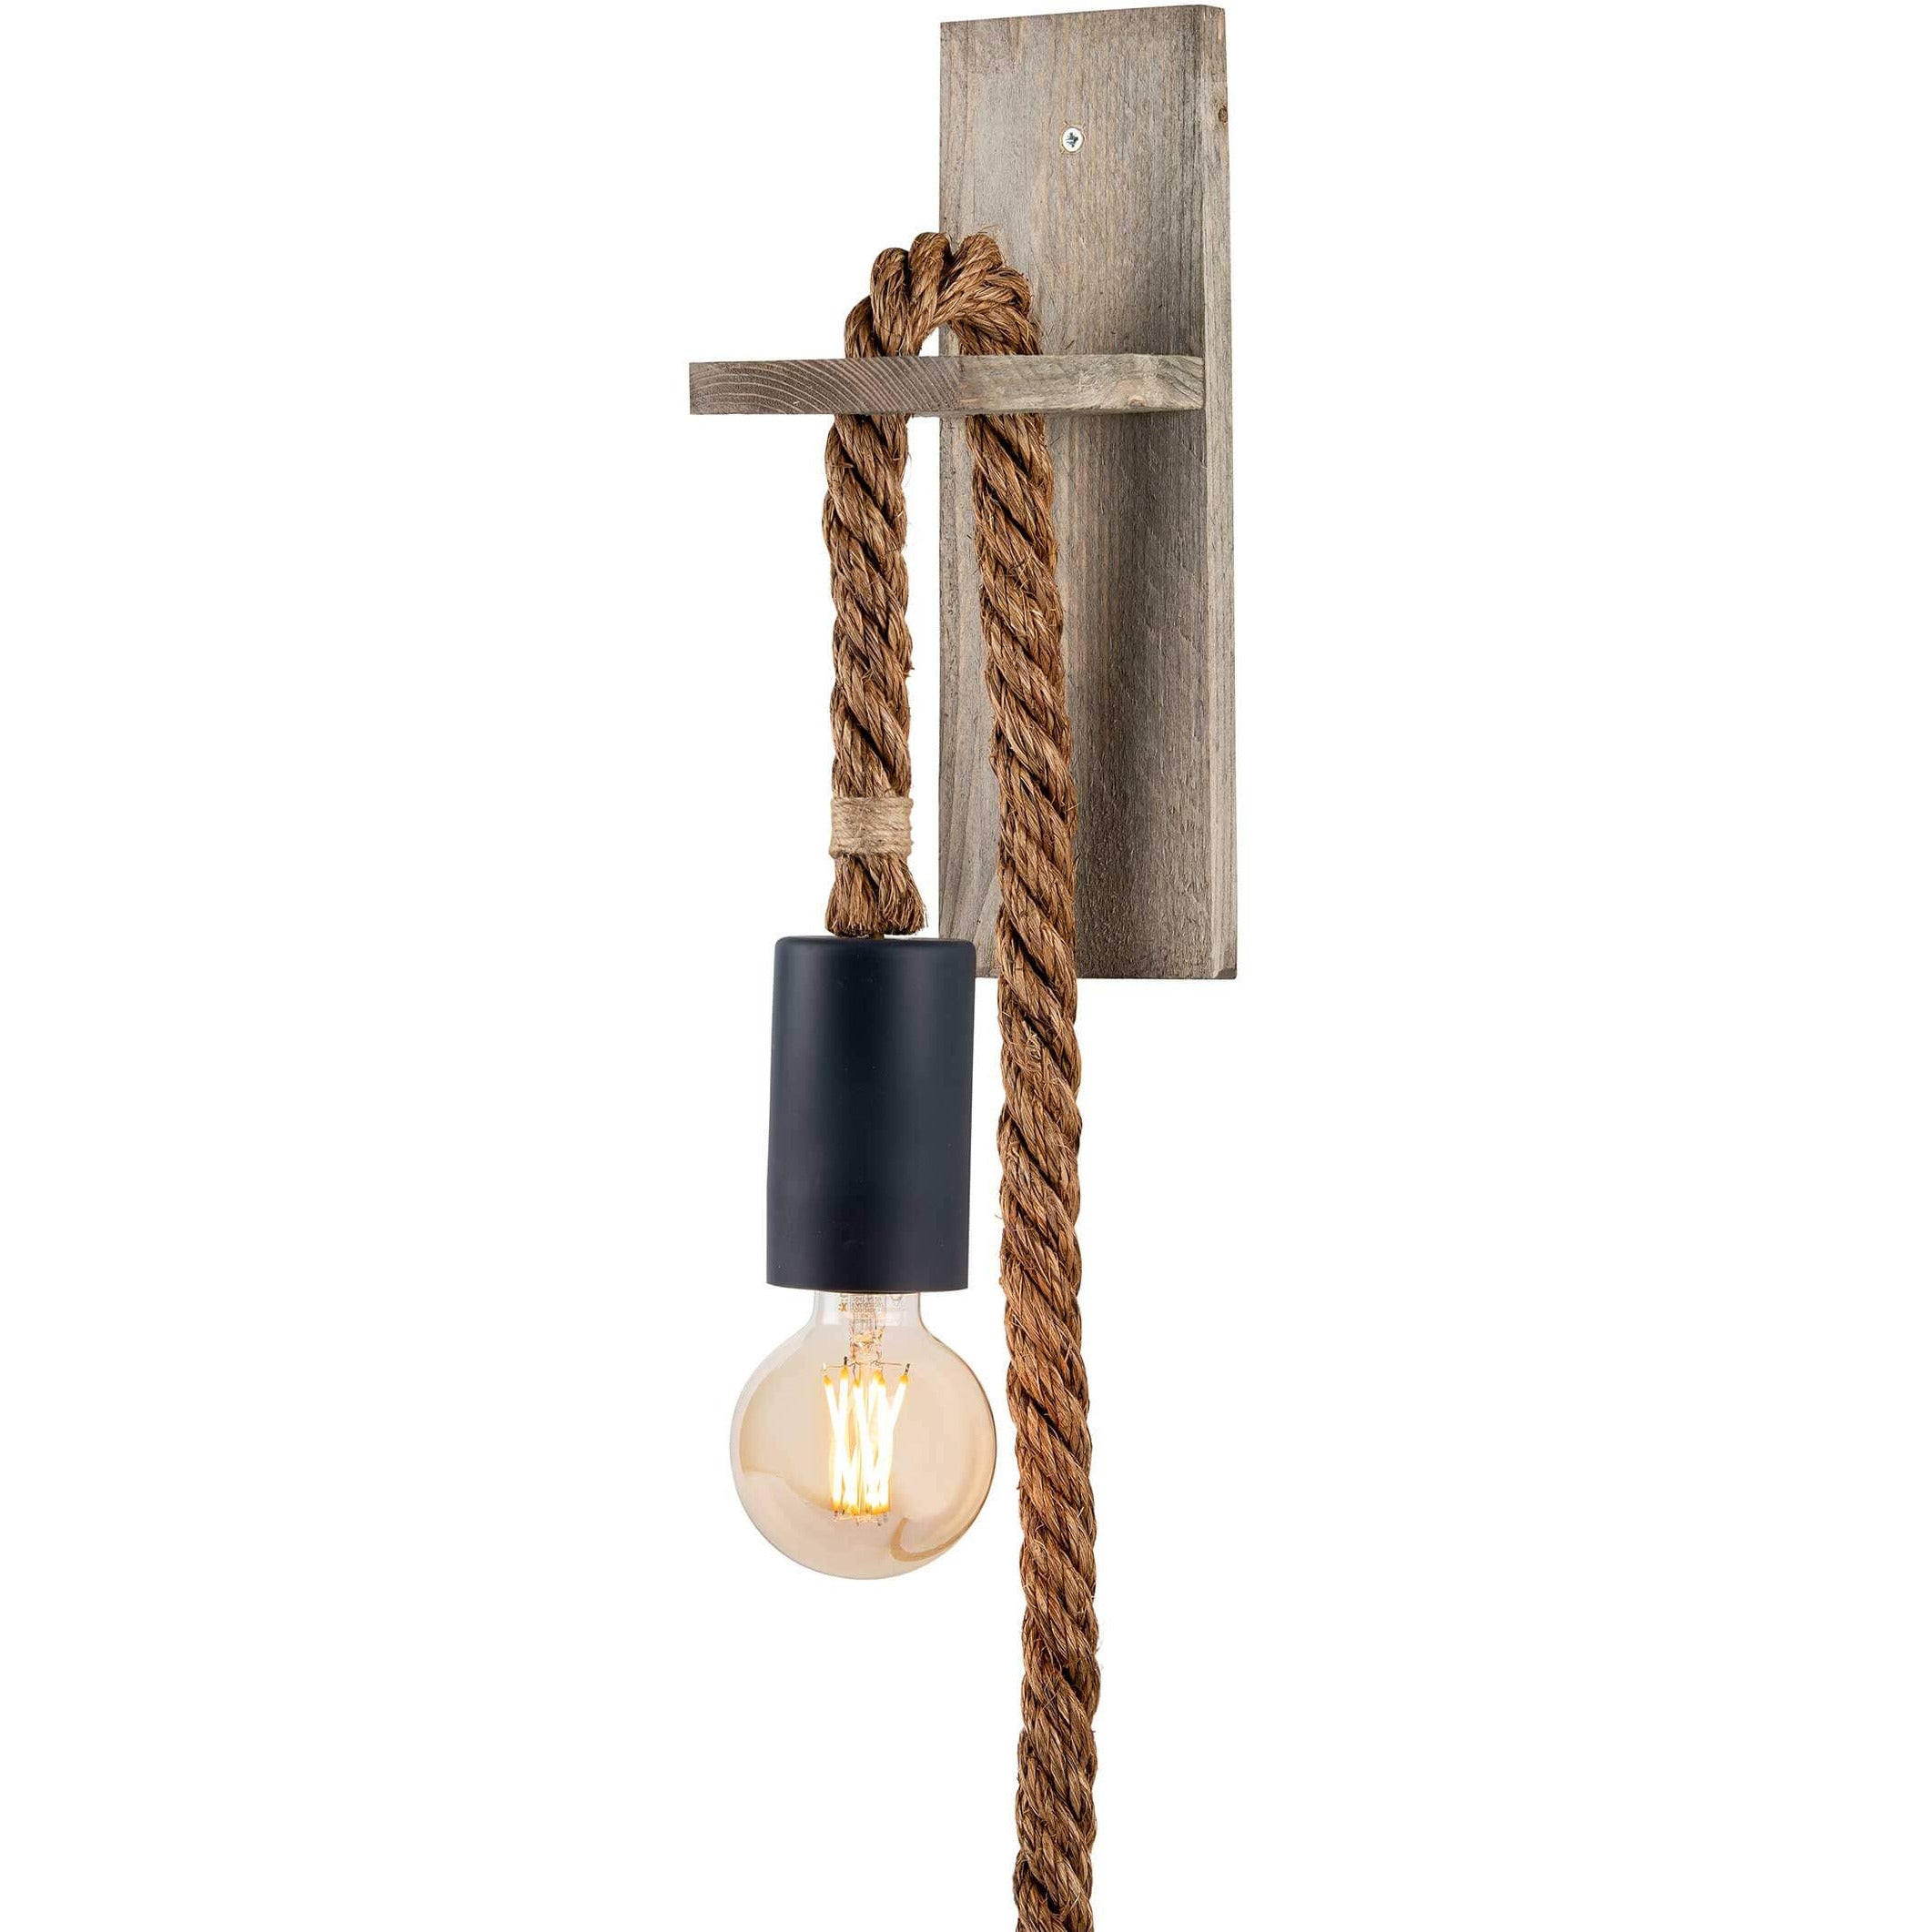 Kaal doorboren waarom niet Wandlamp manilla touw voor buiten – Touwlampshop